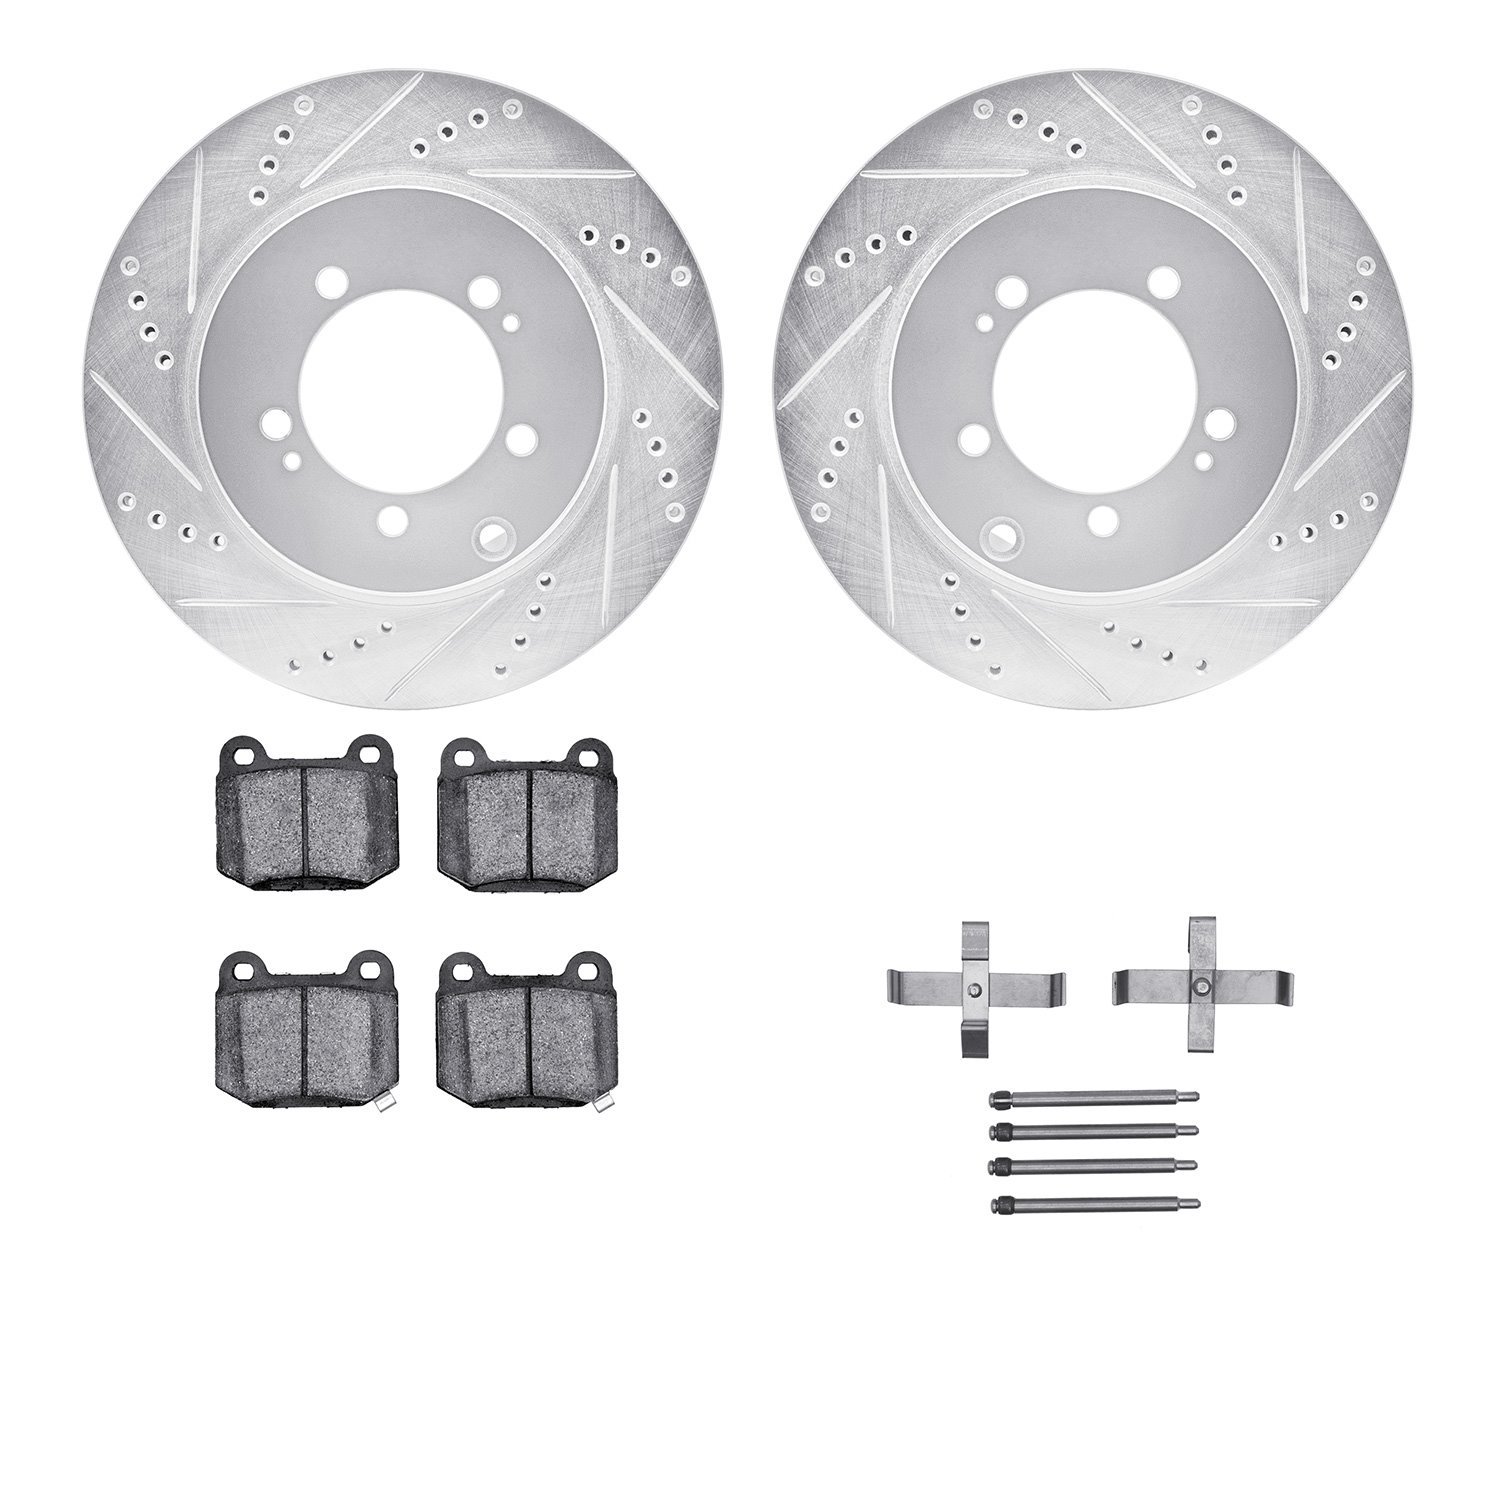 7612-72001 Drilled/Slotted Brake Rotors w/5000 Euro Ceramic Brake Pads Kit & Hardware [Silver], 2003-2006 Mitsubishi, Position: